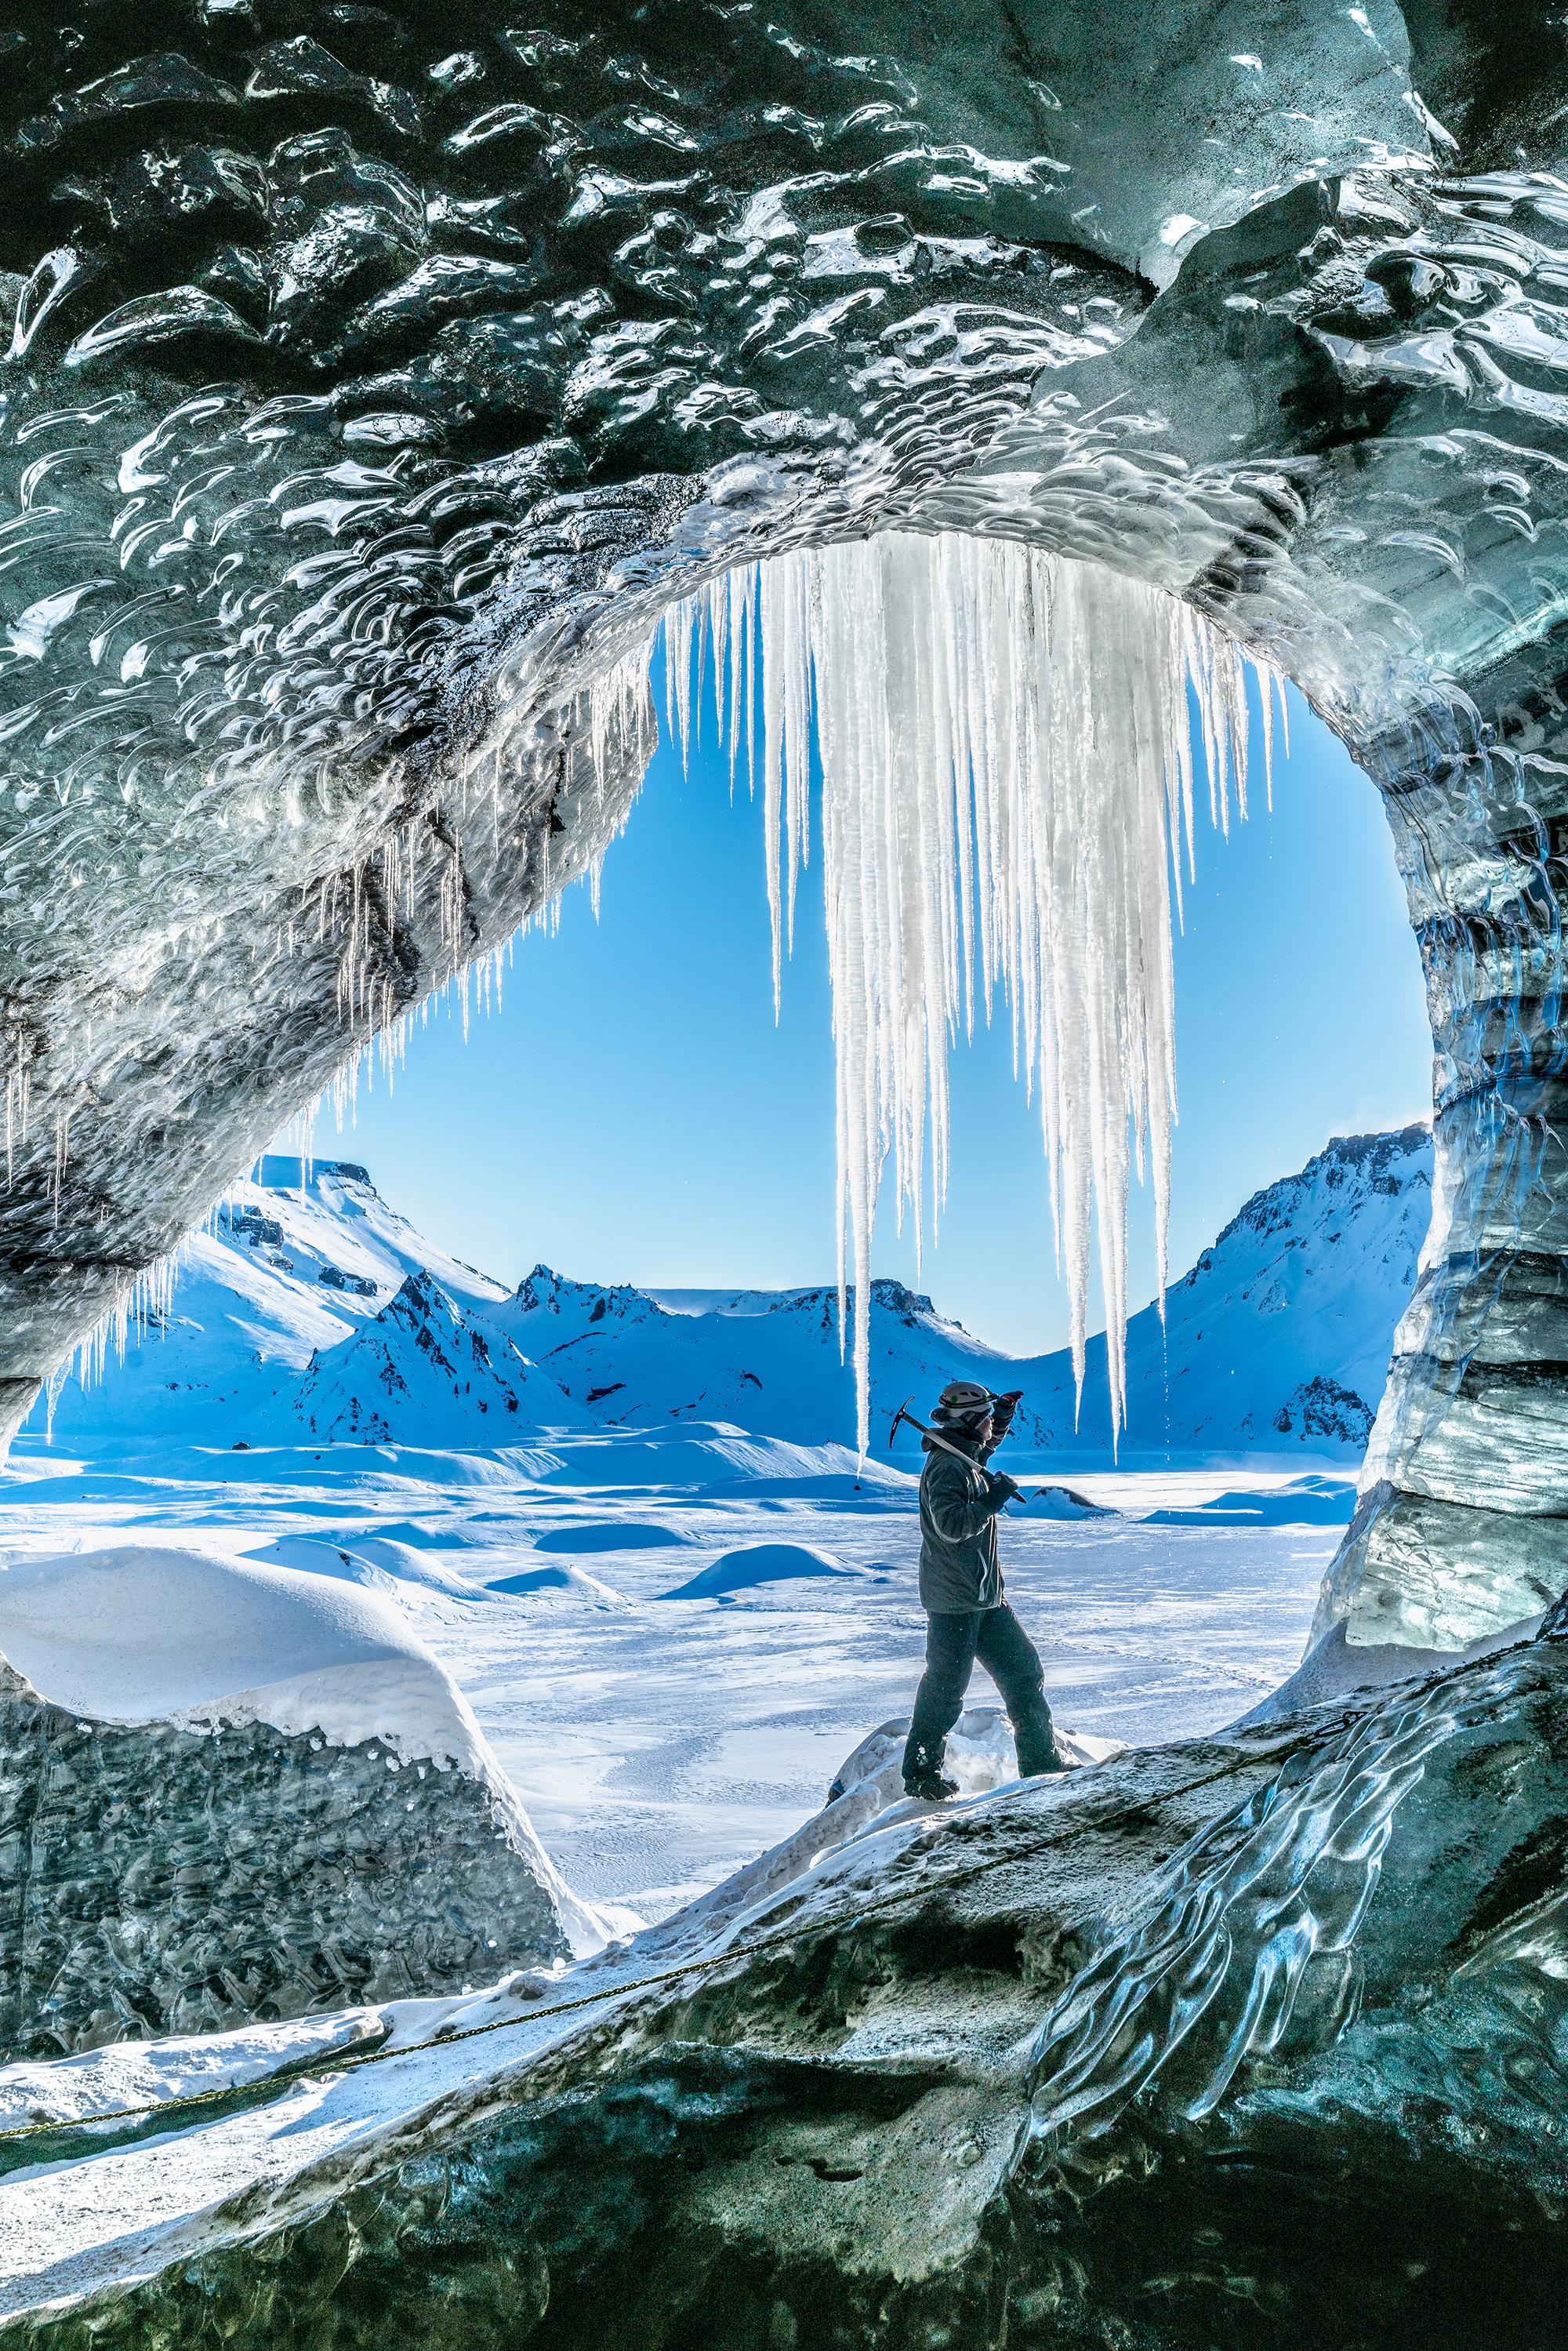 冰岛南岸的米尔达斯冰川下隐藏着一座天然冰洞